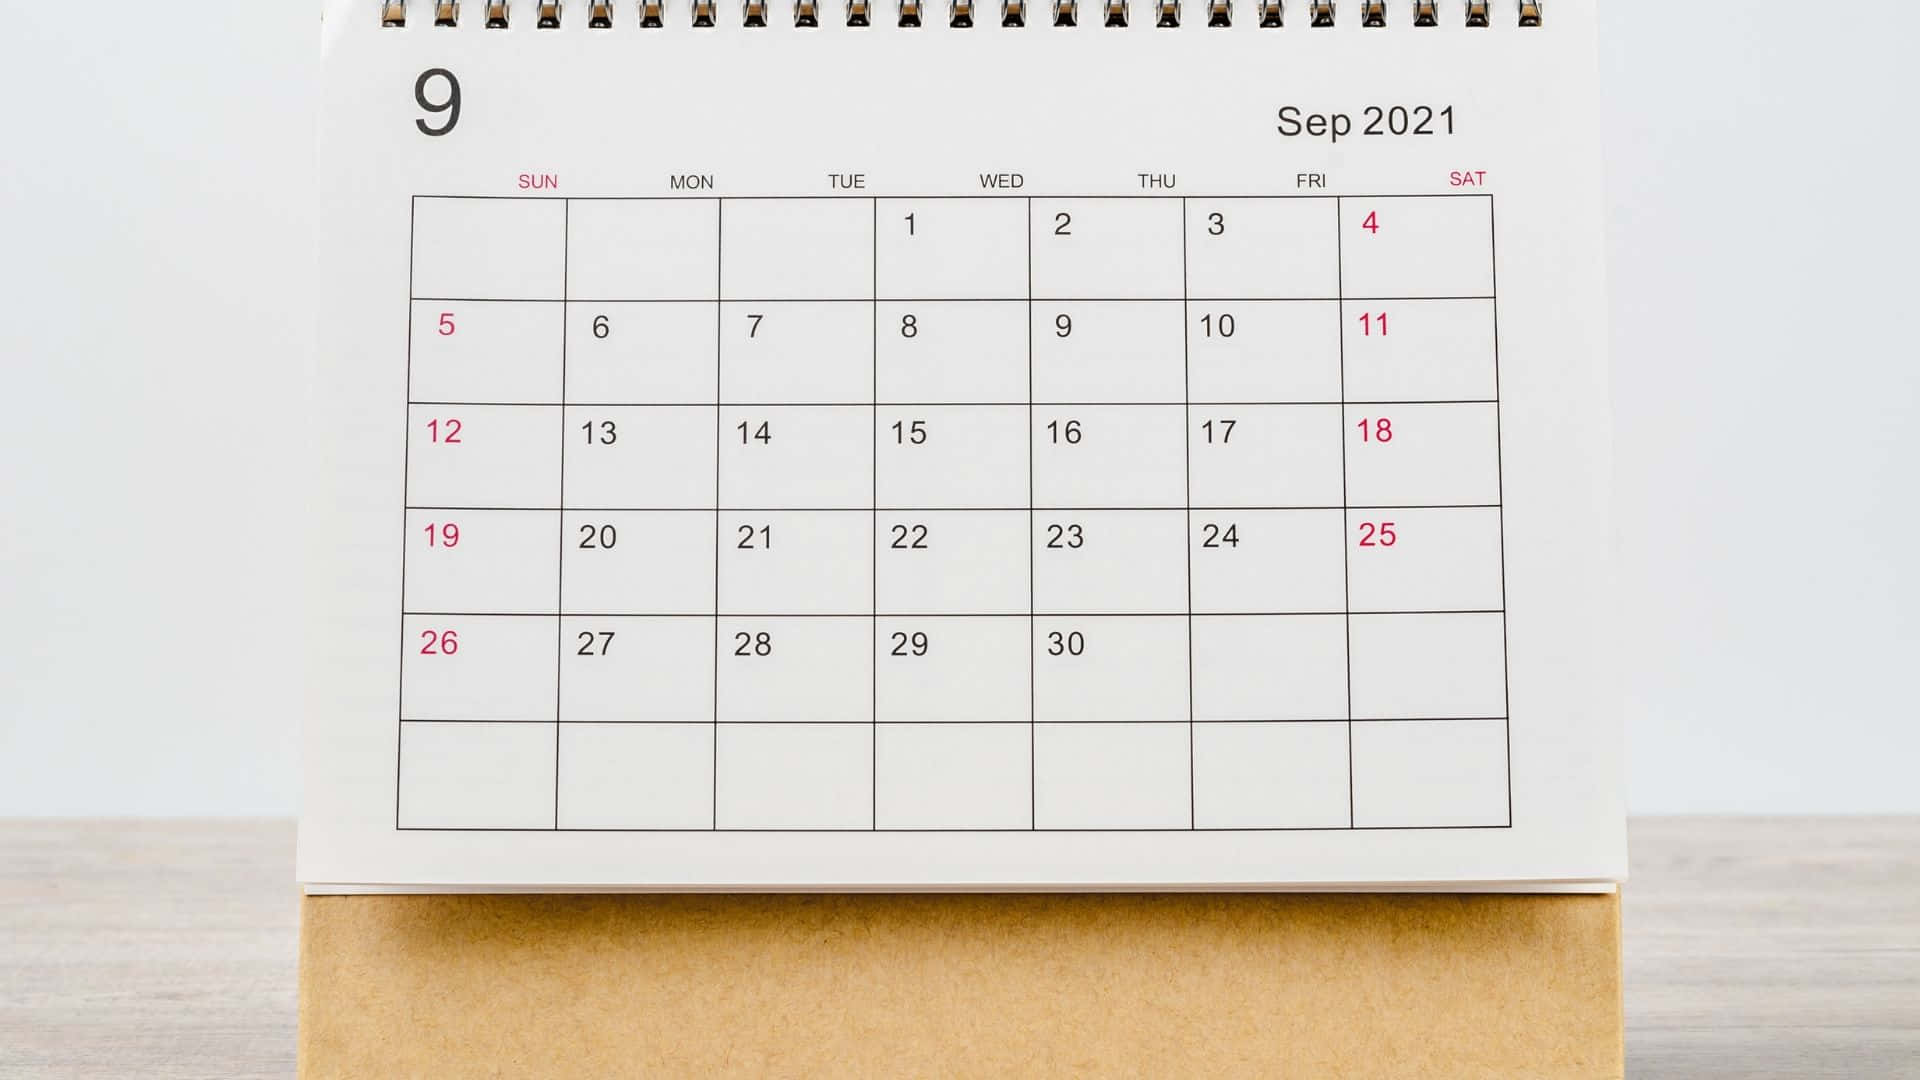 September 2021 Kalender 1920 X 1080 Wallpaper